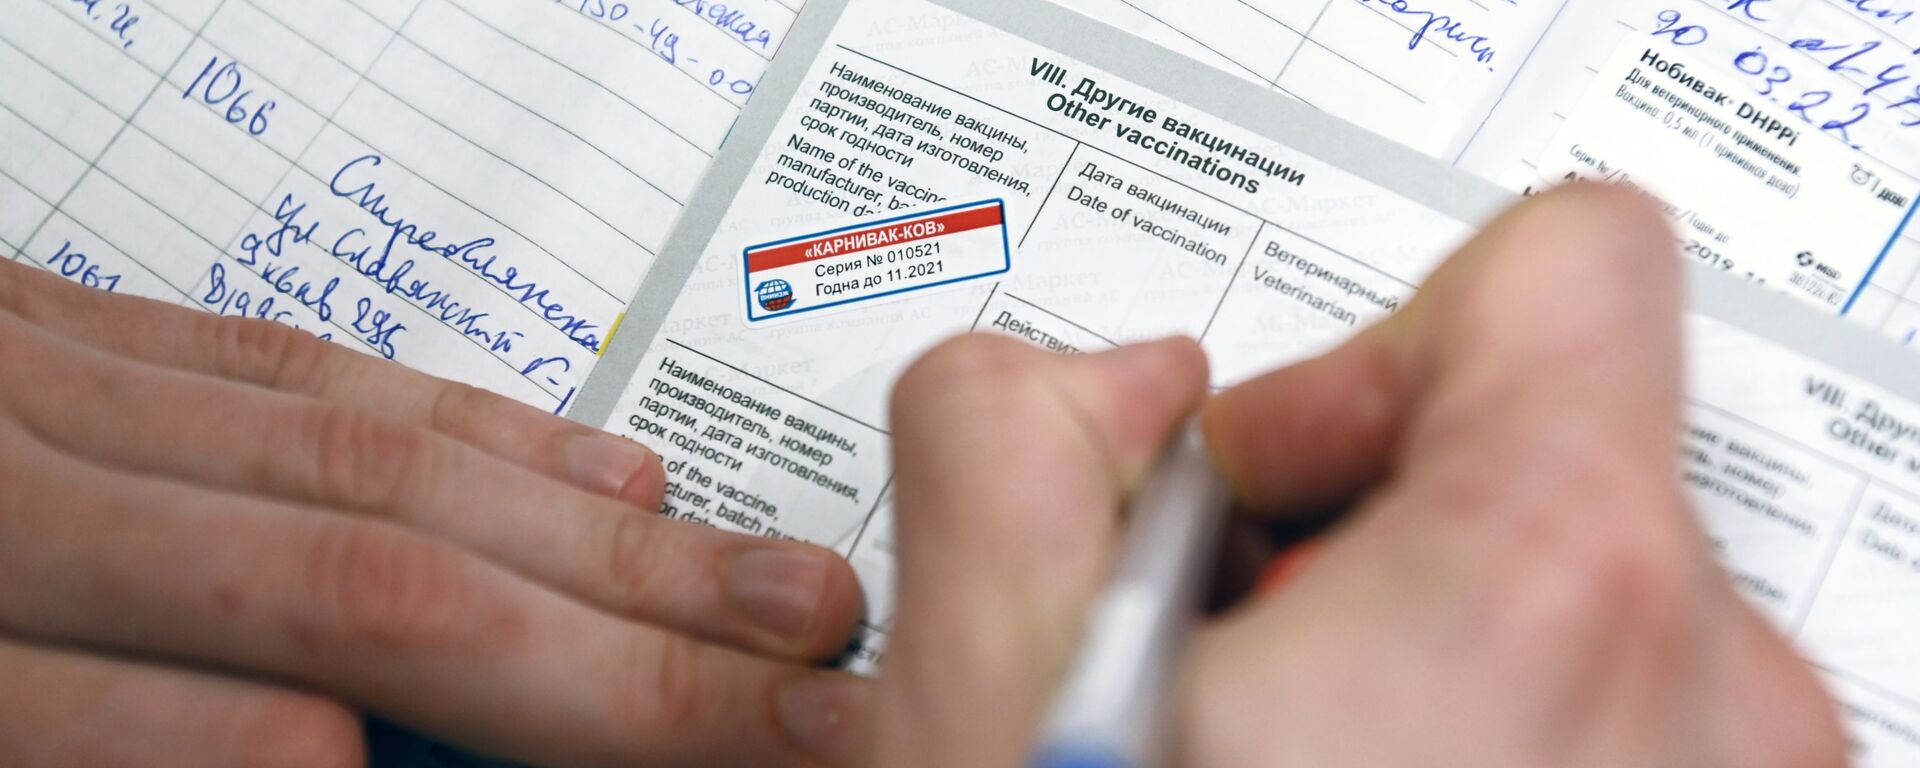 Ветеринарный врач делает отметку в паспорте животного после вакцинации от COVID-19 в ветеринарной клинике в Москве - Sputnik Латвия, 1920, 14.06.2021